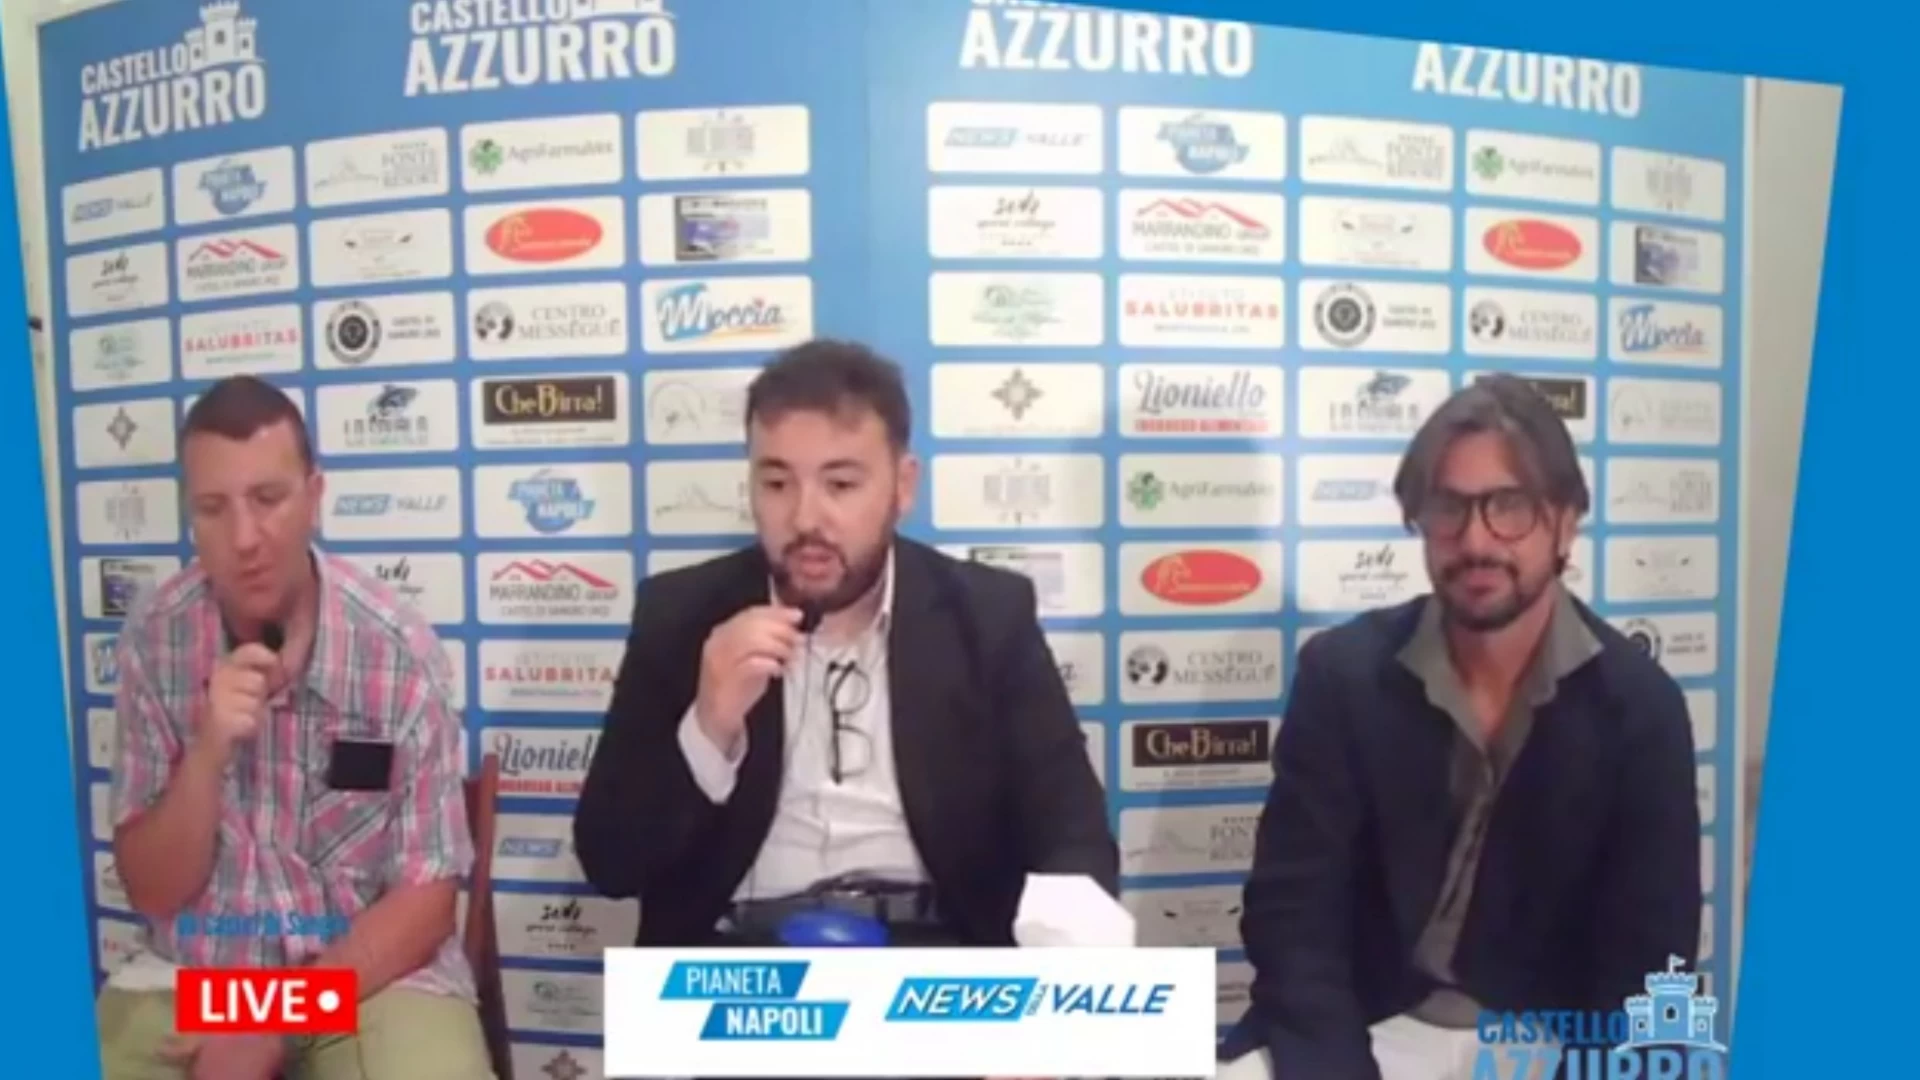 Castello Azzurro rivedi integralmente la quinta puntata con ospite Manuel Parlato di Sportitalia e Canale 21